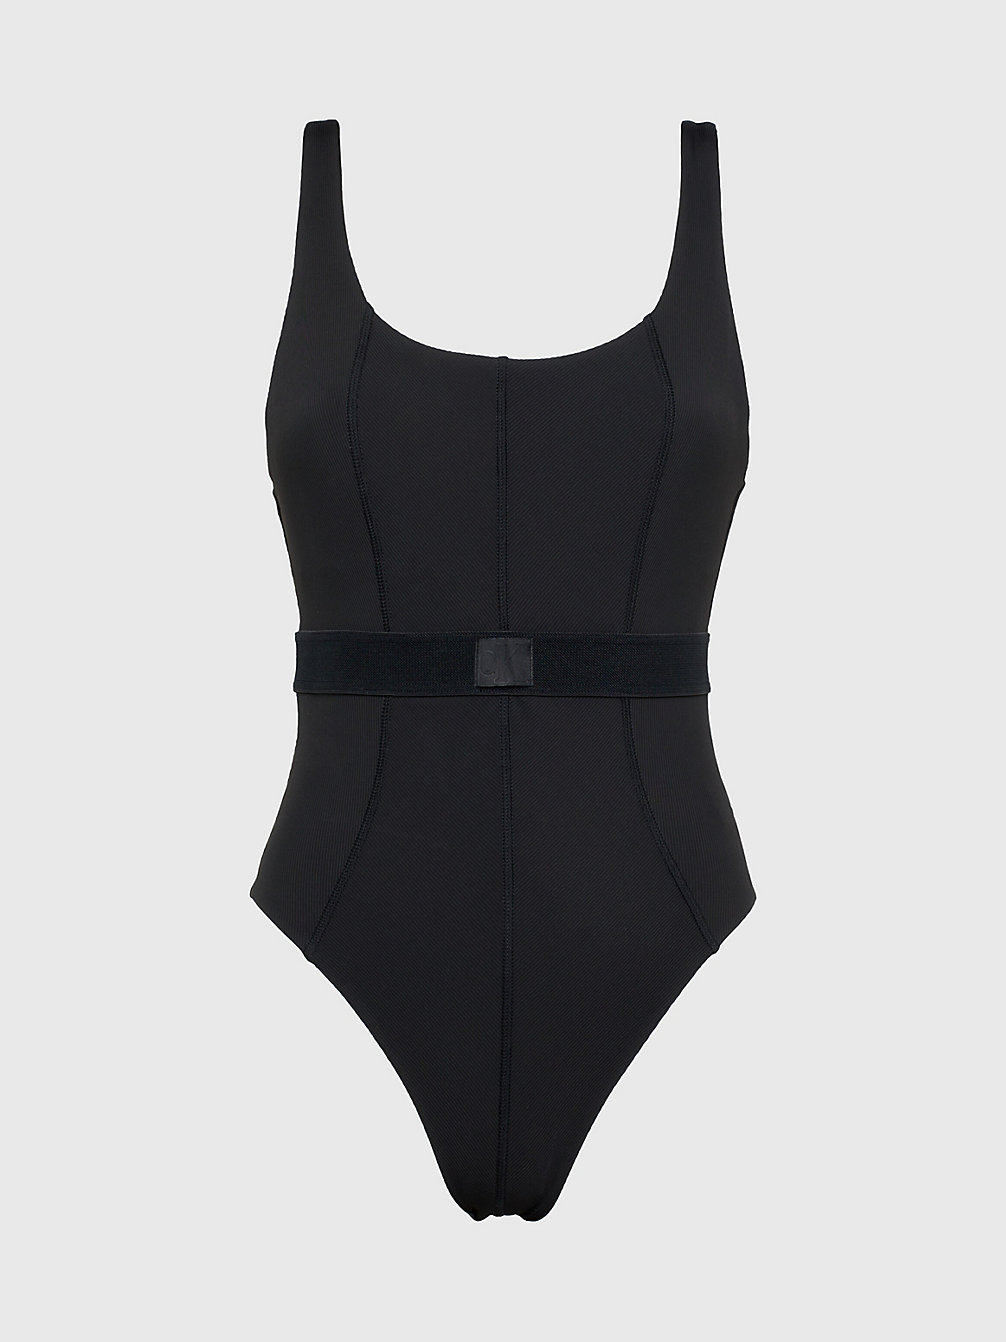 PVH BLACK > Badeanzug Mit Tiefem Rückenausschnitt – CK Monogram Rib > undefined Damen - Calvin Klein